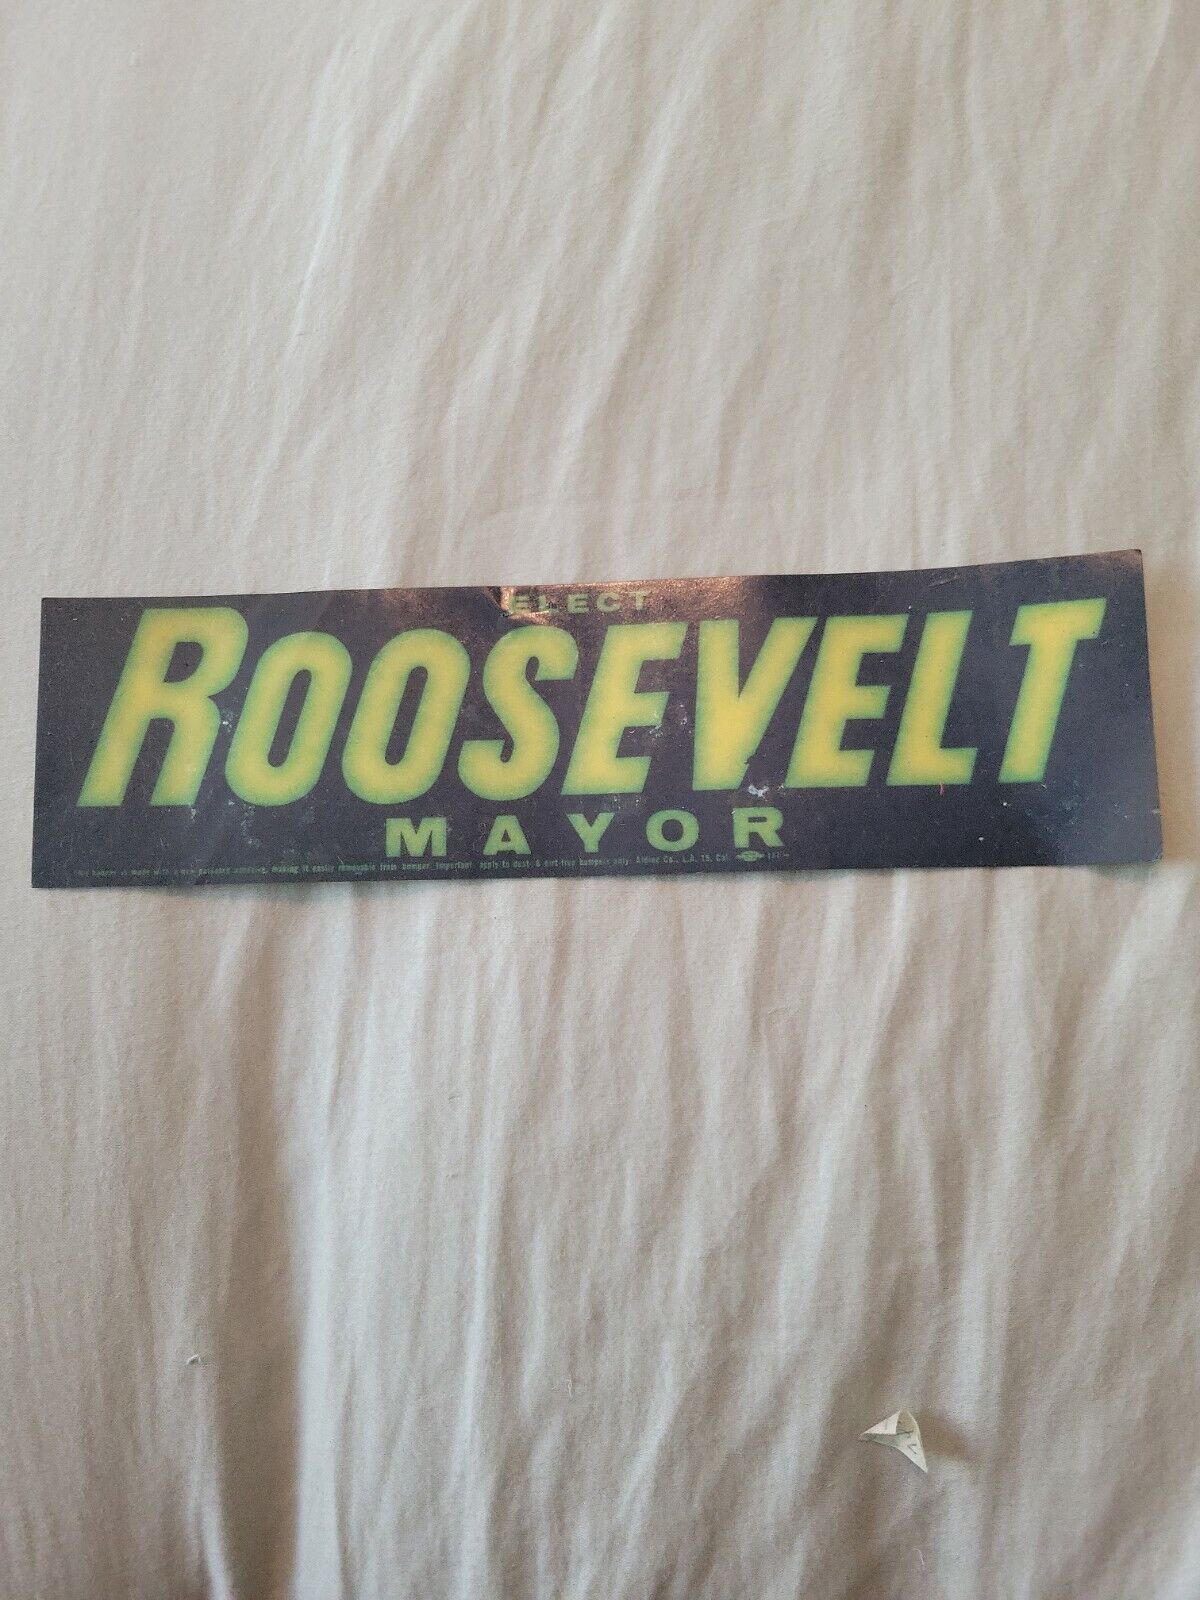  Roosevelt mayor 1960 Bumper Sticker  vintage political